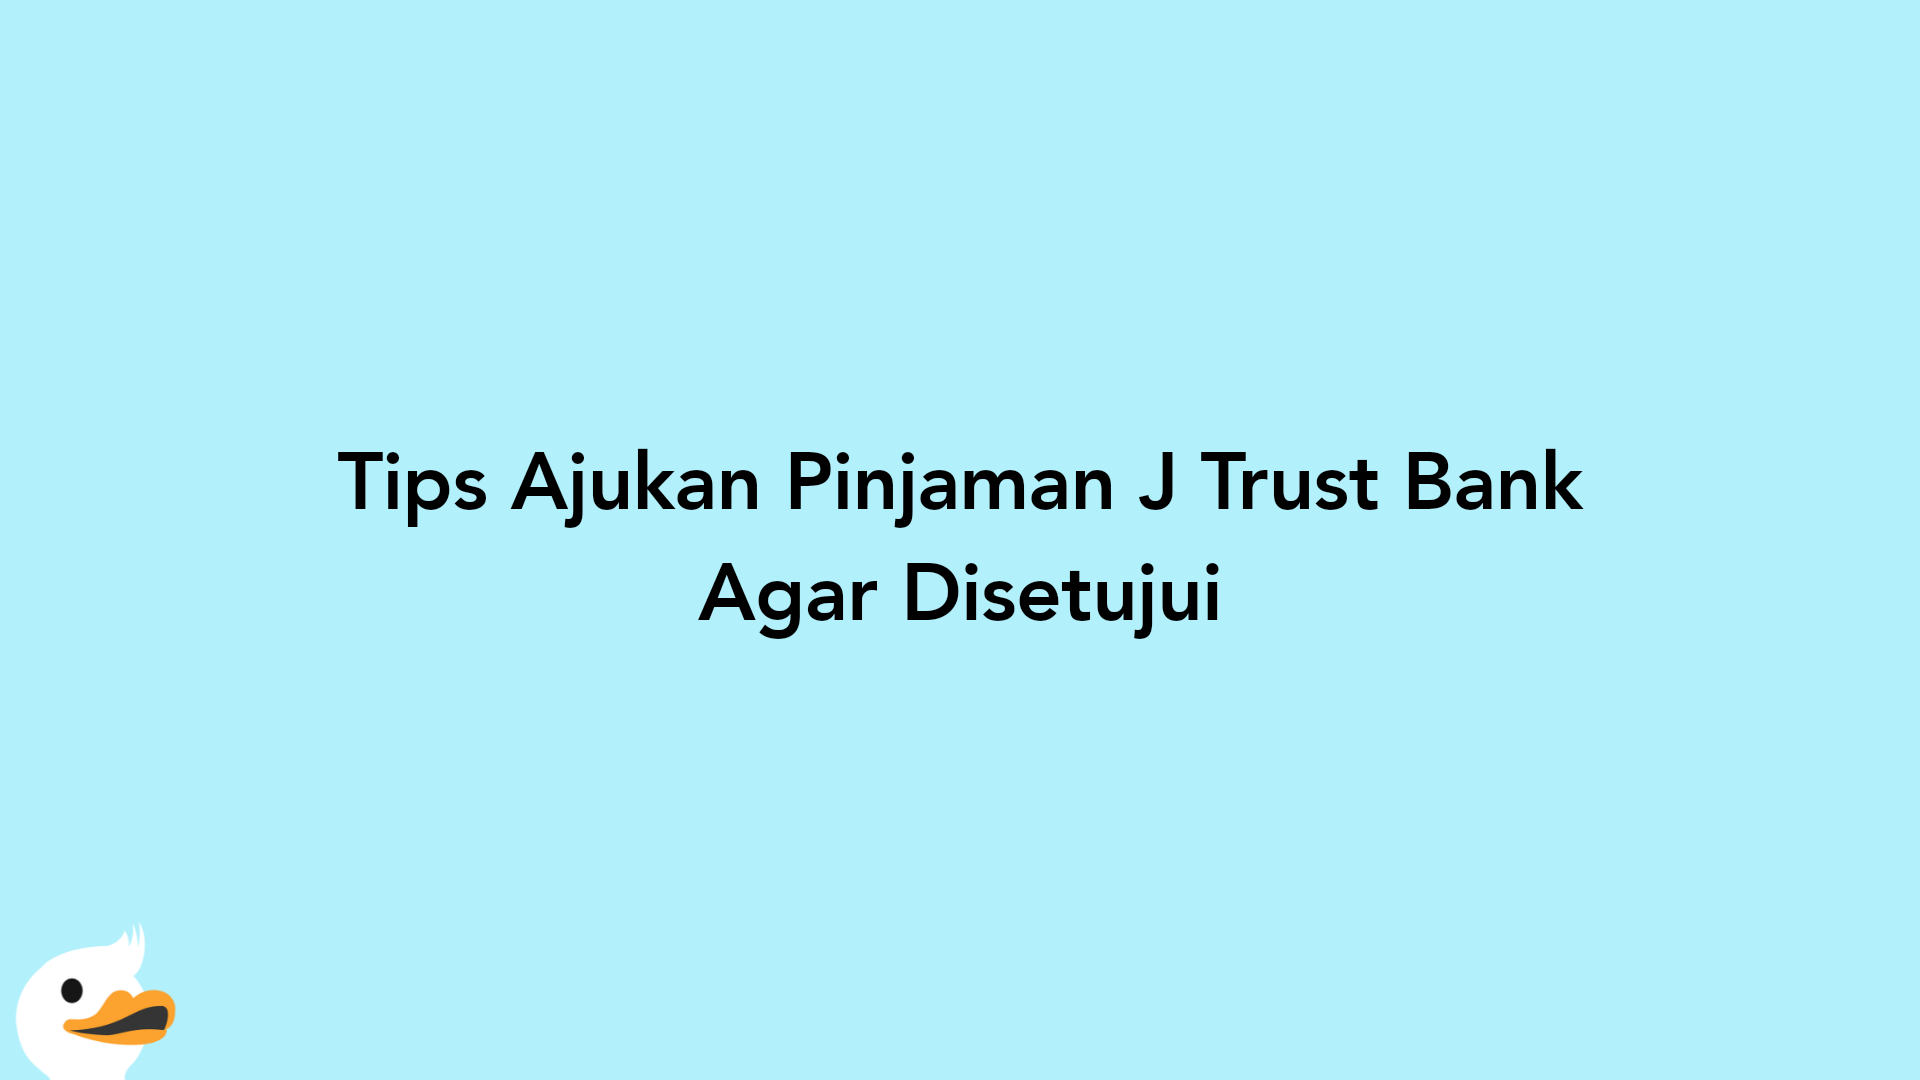 Tips Ajukan Pinjaman J Trust Bank Agar Disetujui